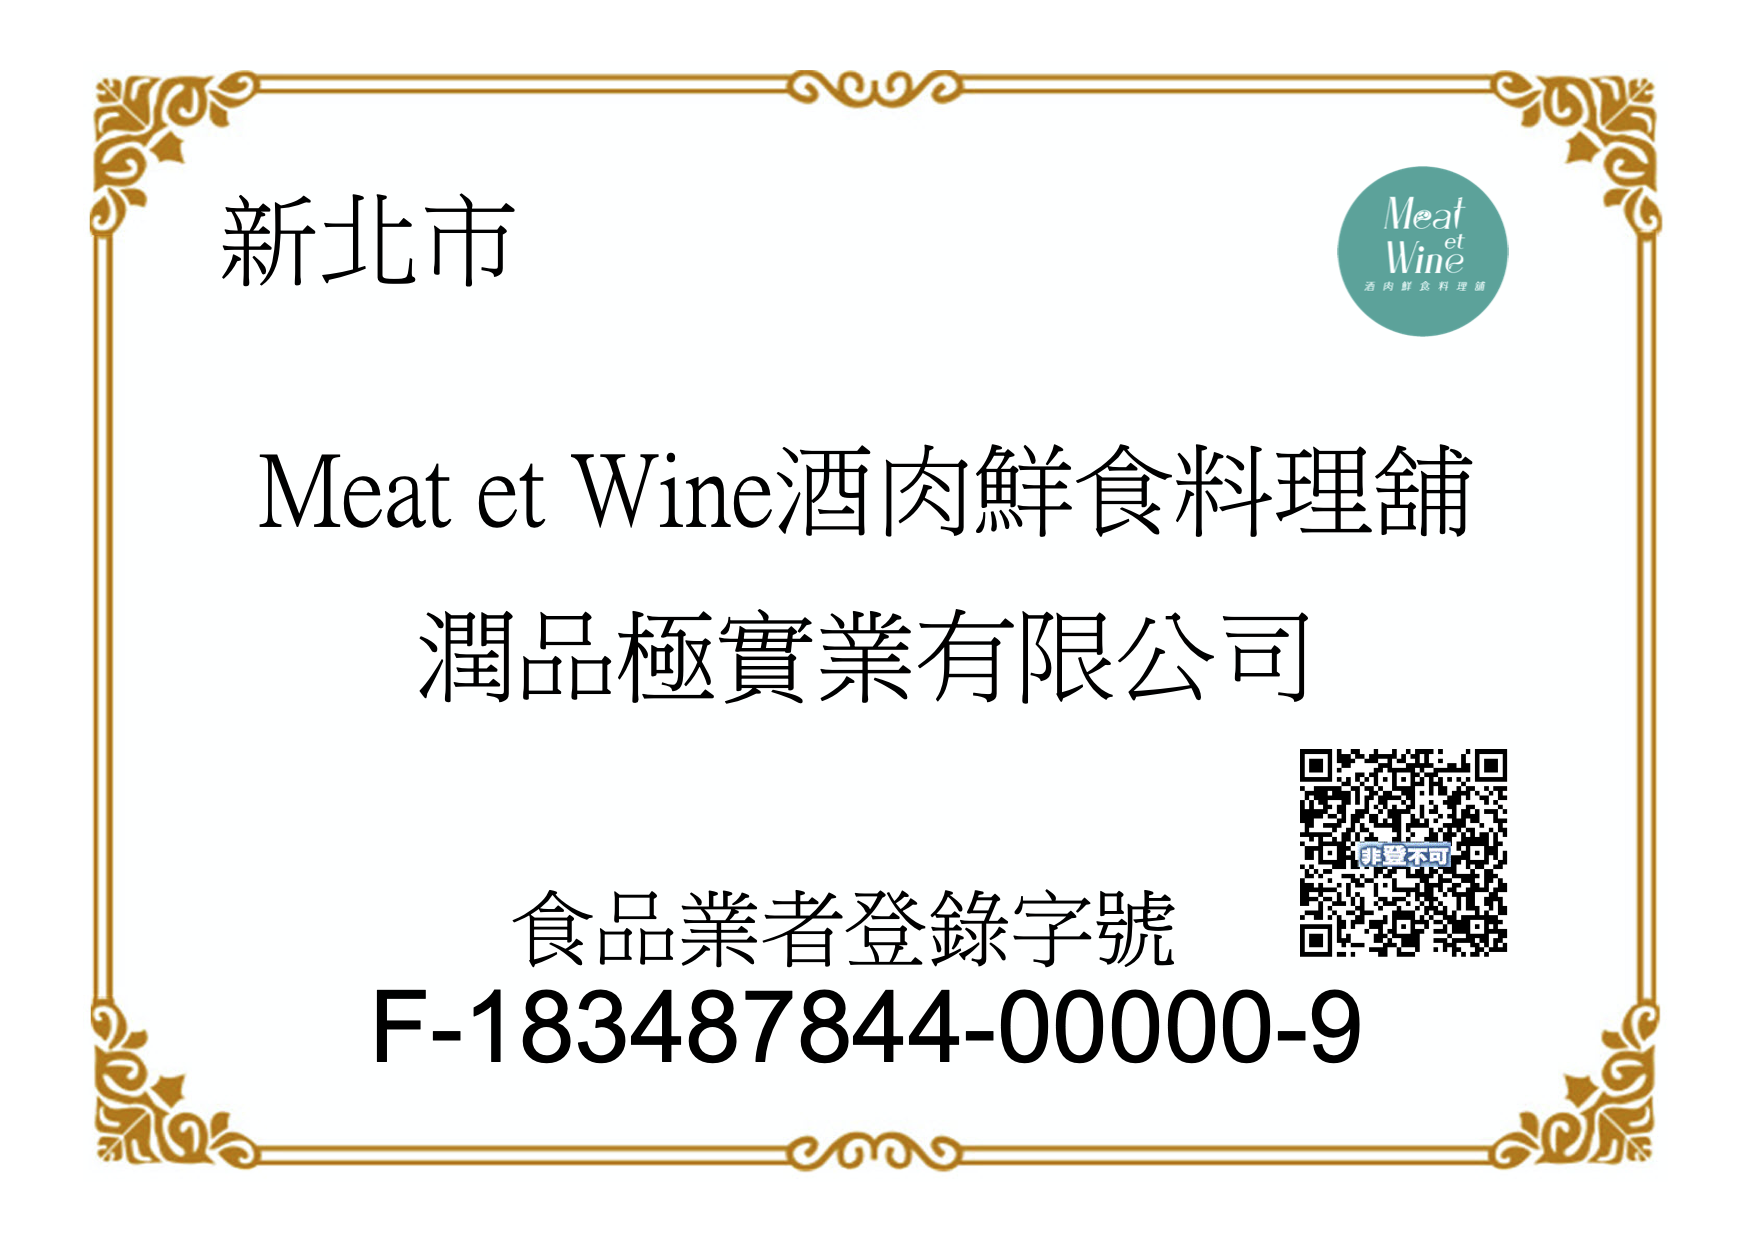 meat et wine 酒肉鮮食料理舖, 食品業者登錄字號